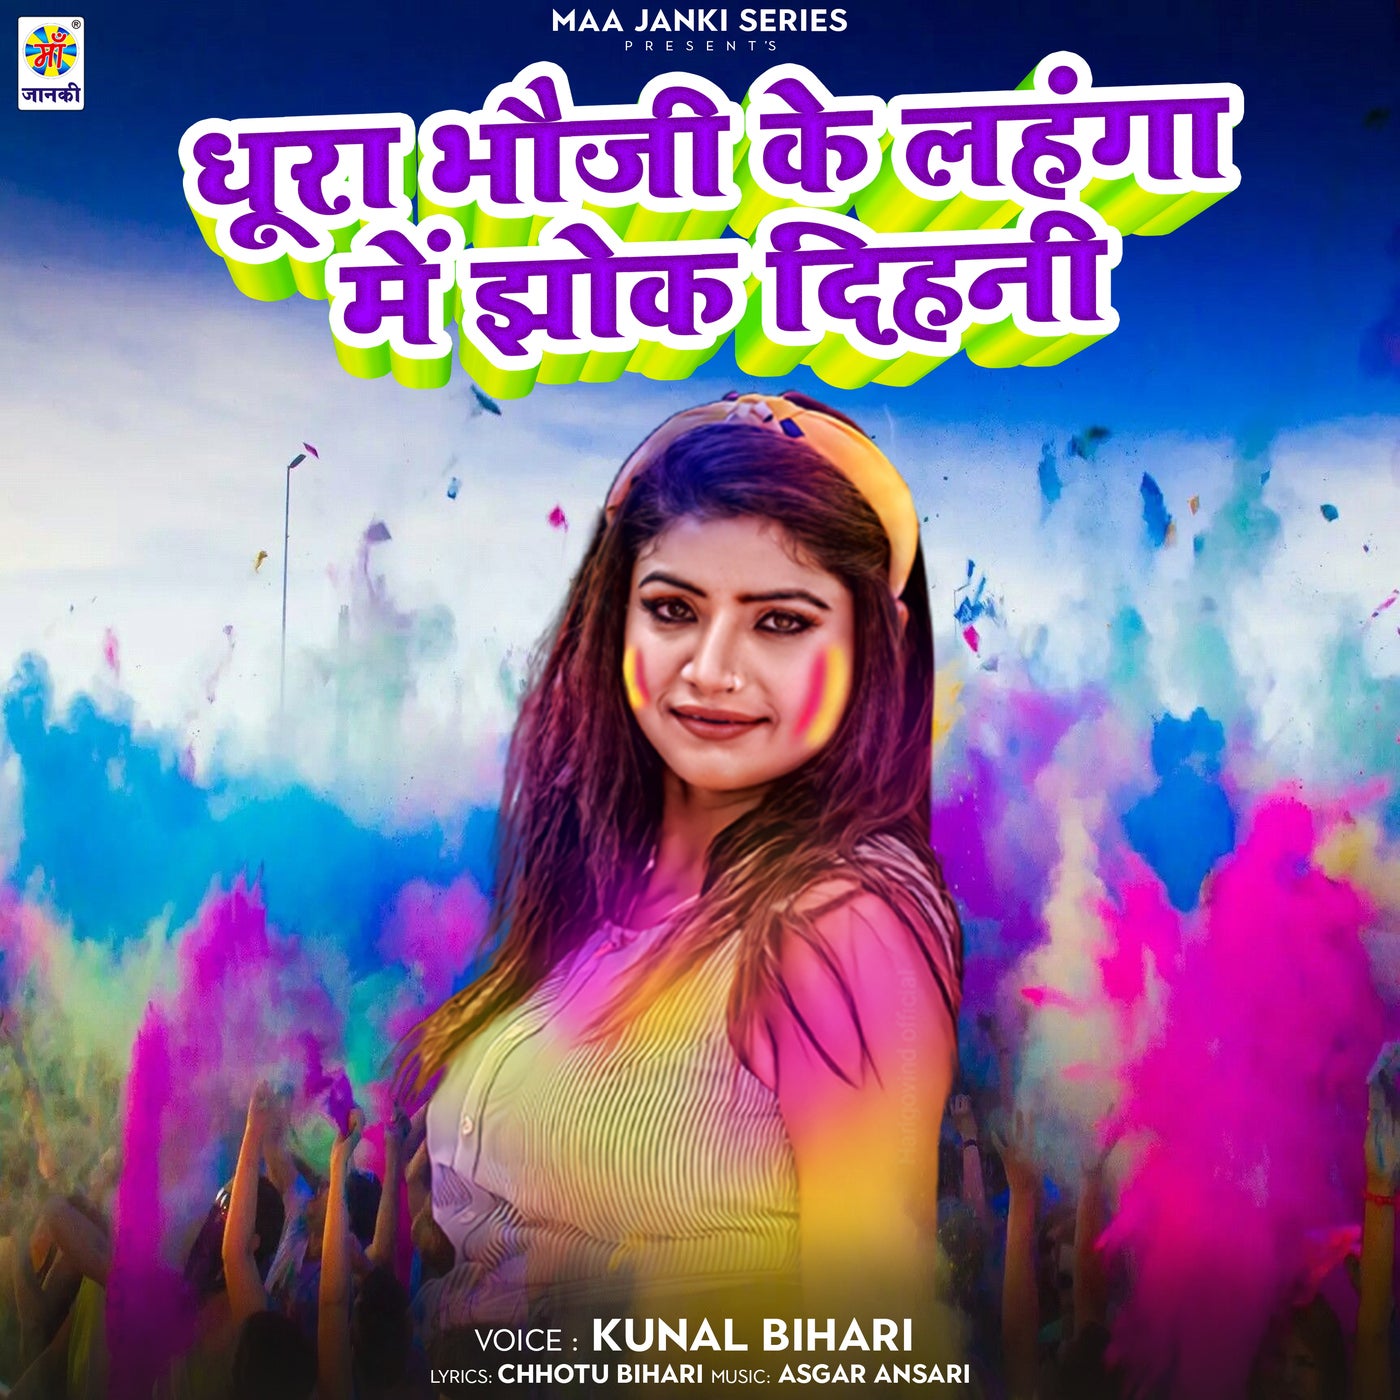 Pawan Singh Sapna chaudhary singer shilpi raj latest Song Lehenga Lehak  Jaayi trending on youtube | Pawan Singh और Sapna chaudhary के ठुमकों पर  फिदा हुए दर्शक, 'लहंगा लहक जाई'ने यूट्यूब पर